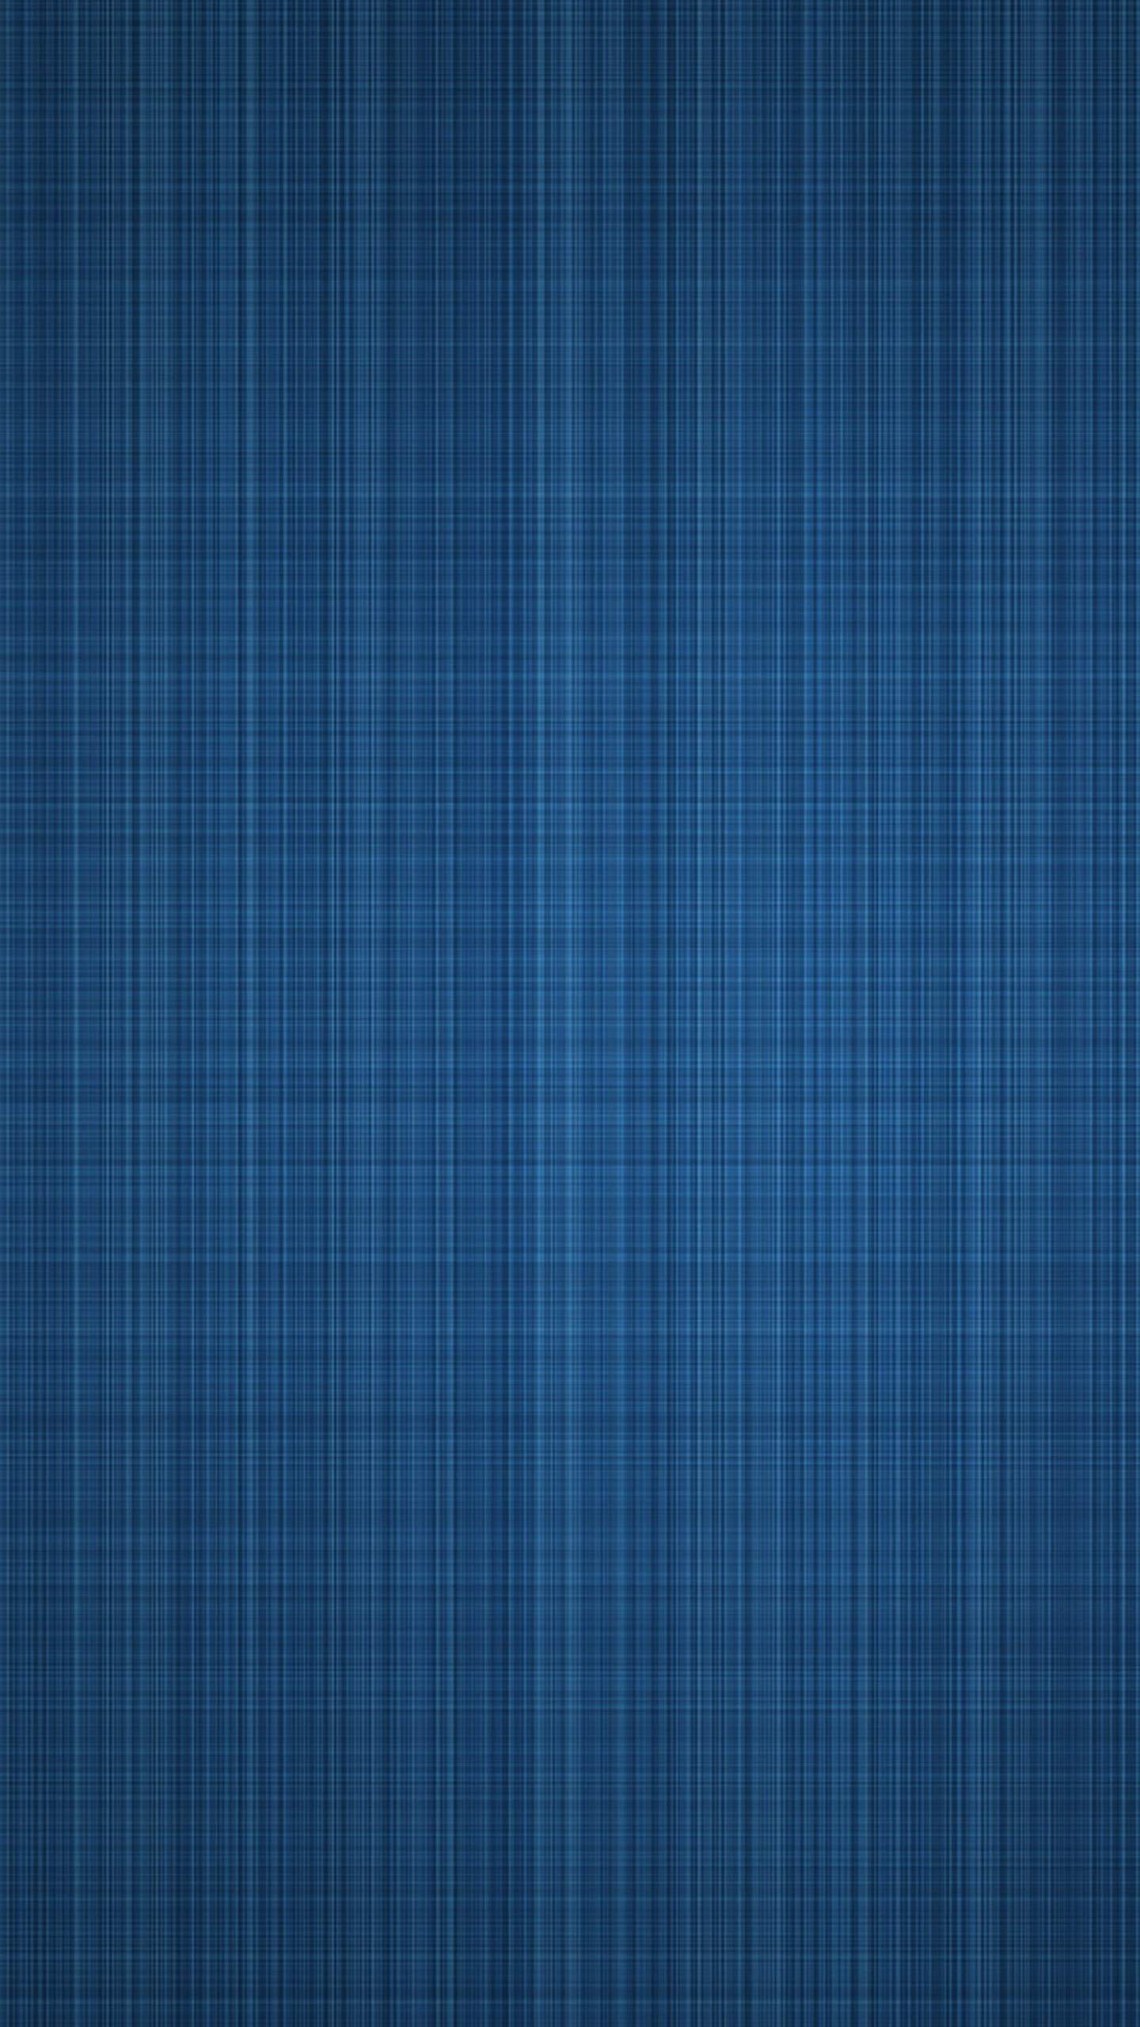 삼성 갤럭시 그랜드 프라임 플러스 벽지,푸른,격자 무늬,무늬,터키 옥,격자 무늬 모직물